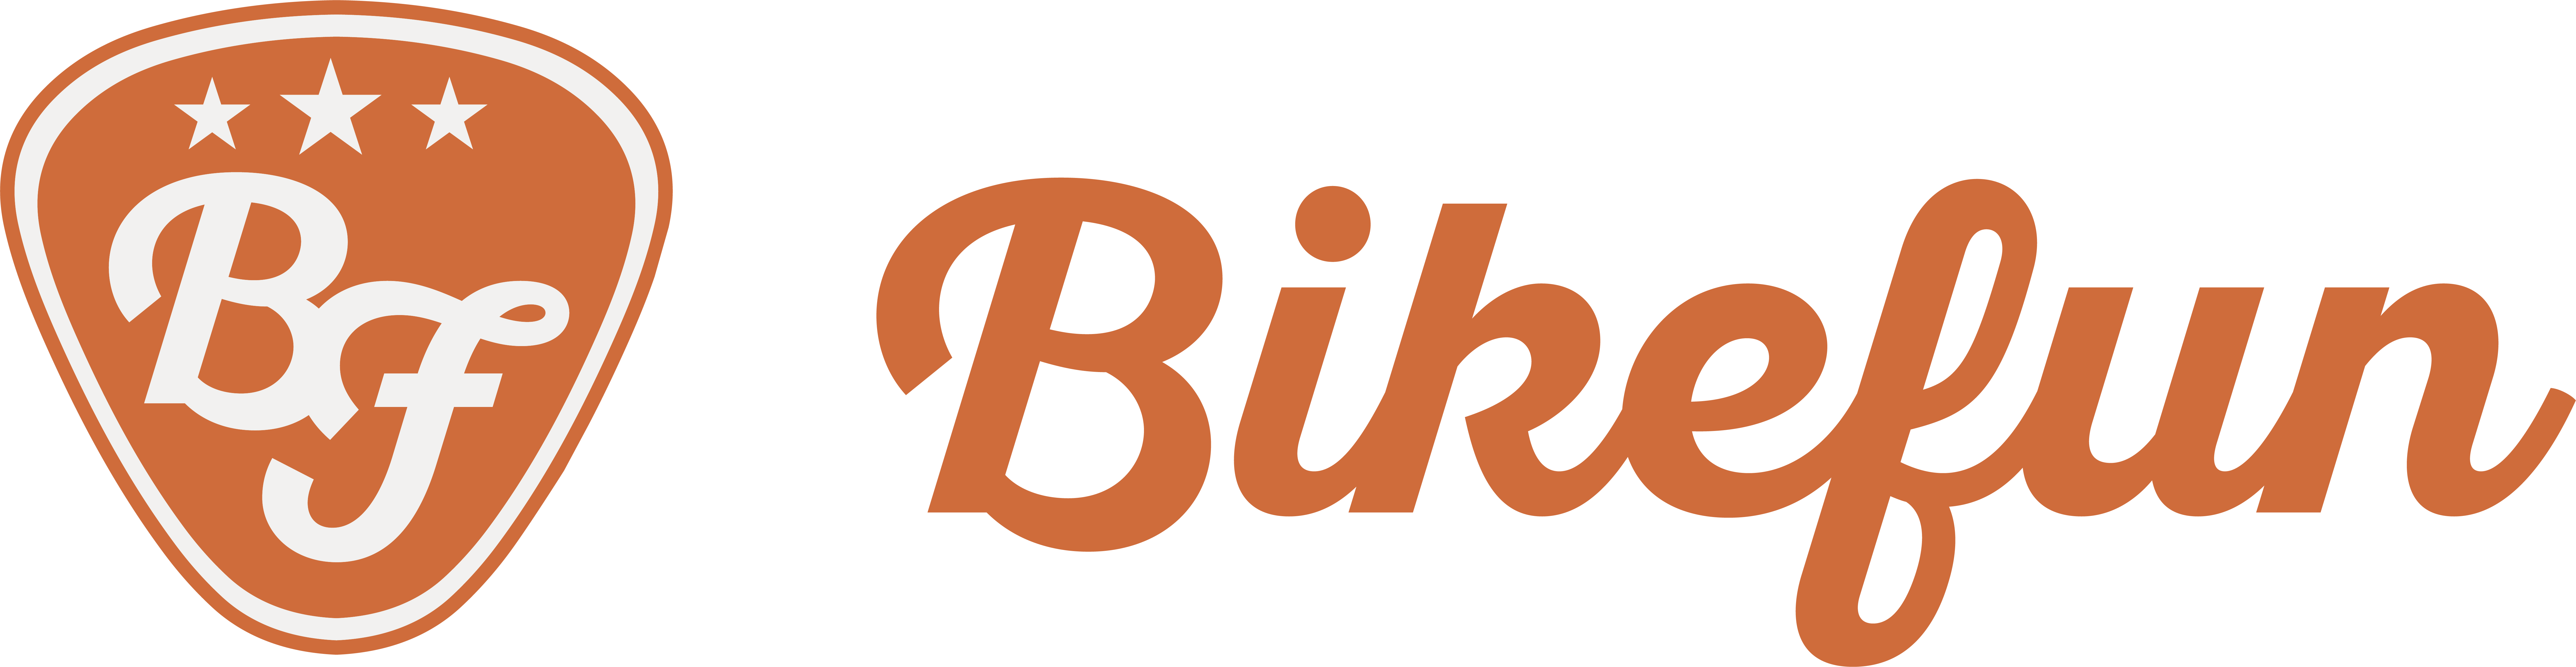 Bikefun